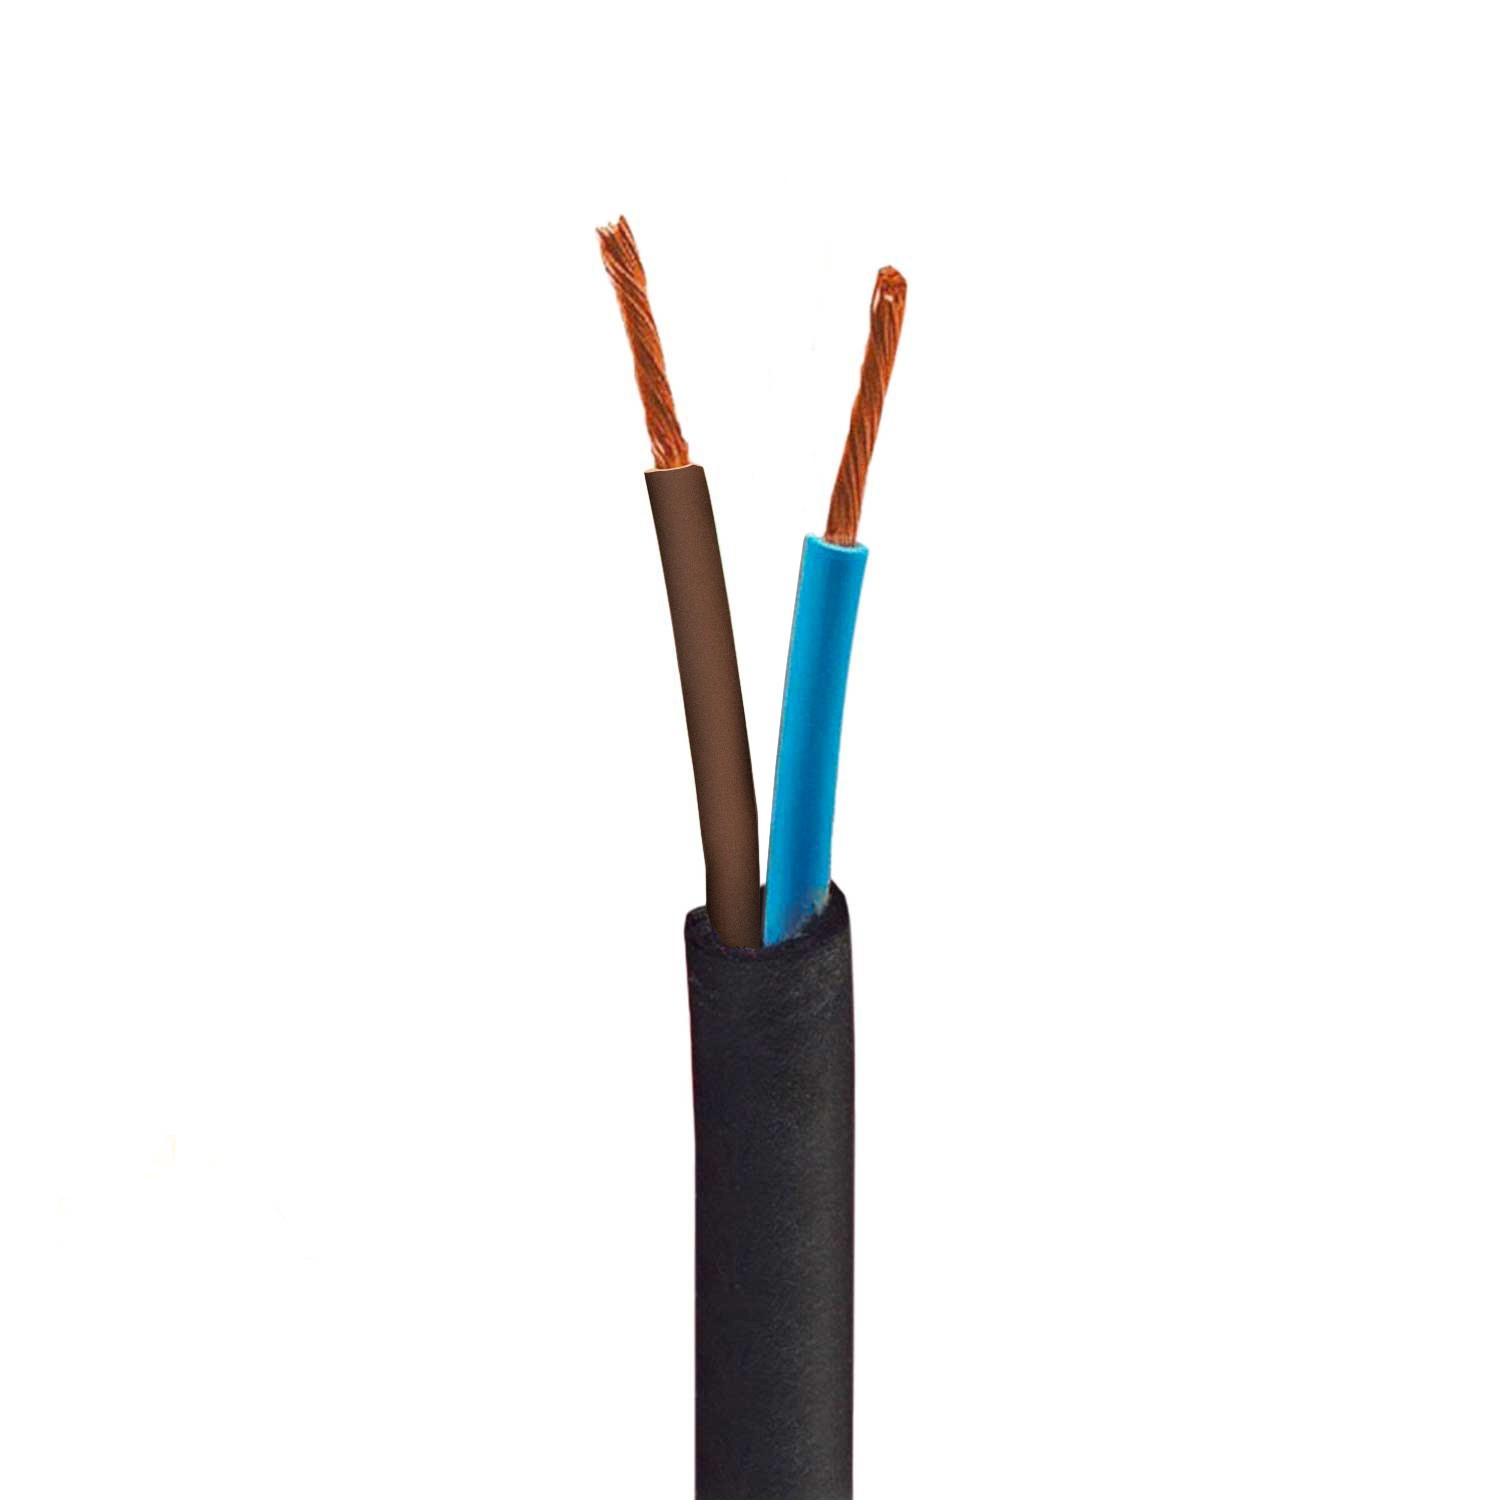 https://www.creative-cables.ch/112052-big_default/outdoor-elektrokabel-mit-ummantelung-aus-naturlichem-grauen-leinen-sn02-rund-uv-bestandig-kompatibel-mit-eiva-outdoor-ip65.jpg